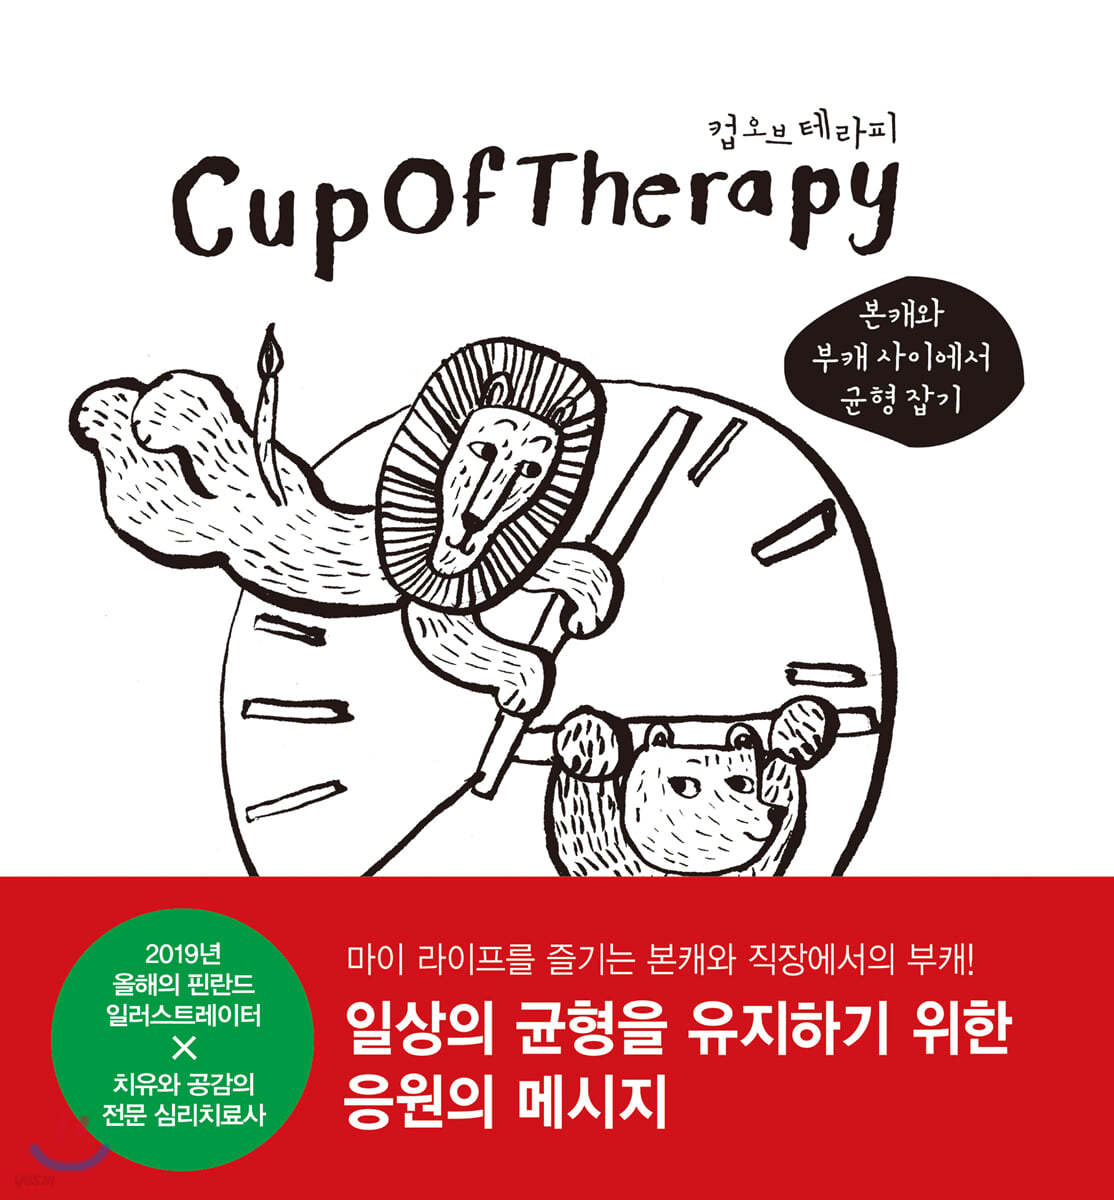 컵오브테라피 CupOfTherapy : 본캐와 부캐 사이에서 균형 잡기